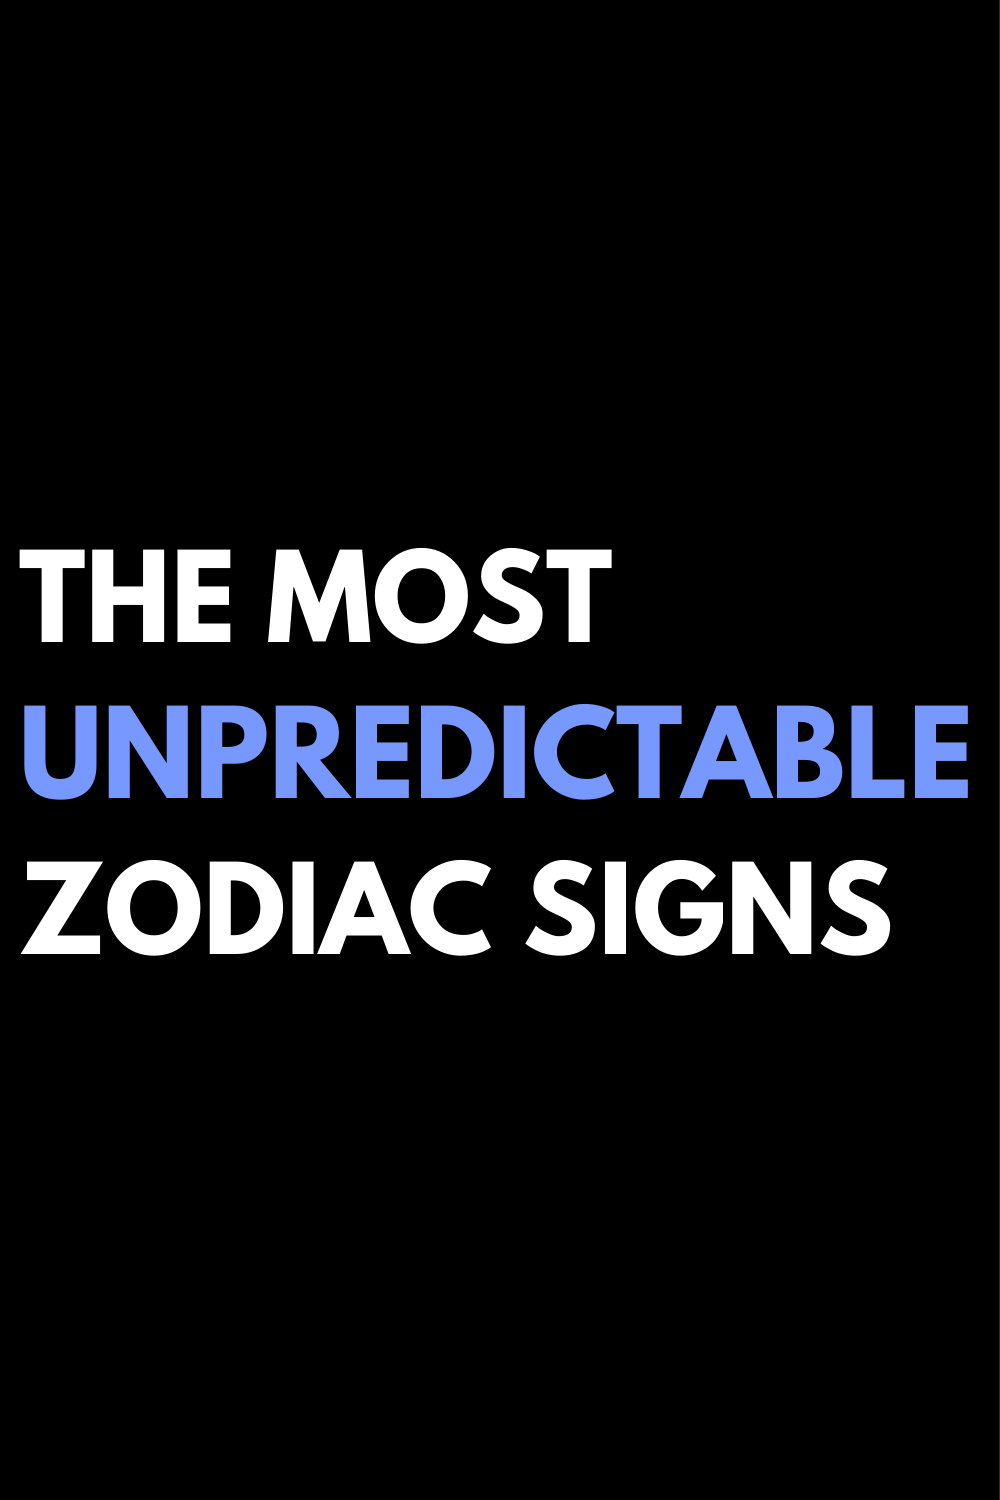 The most unpredictable zodiac signs